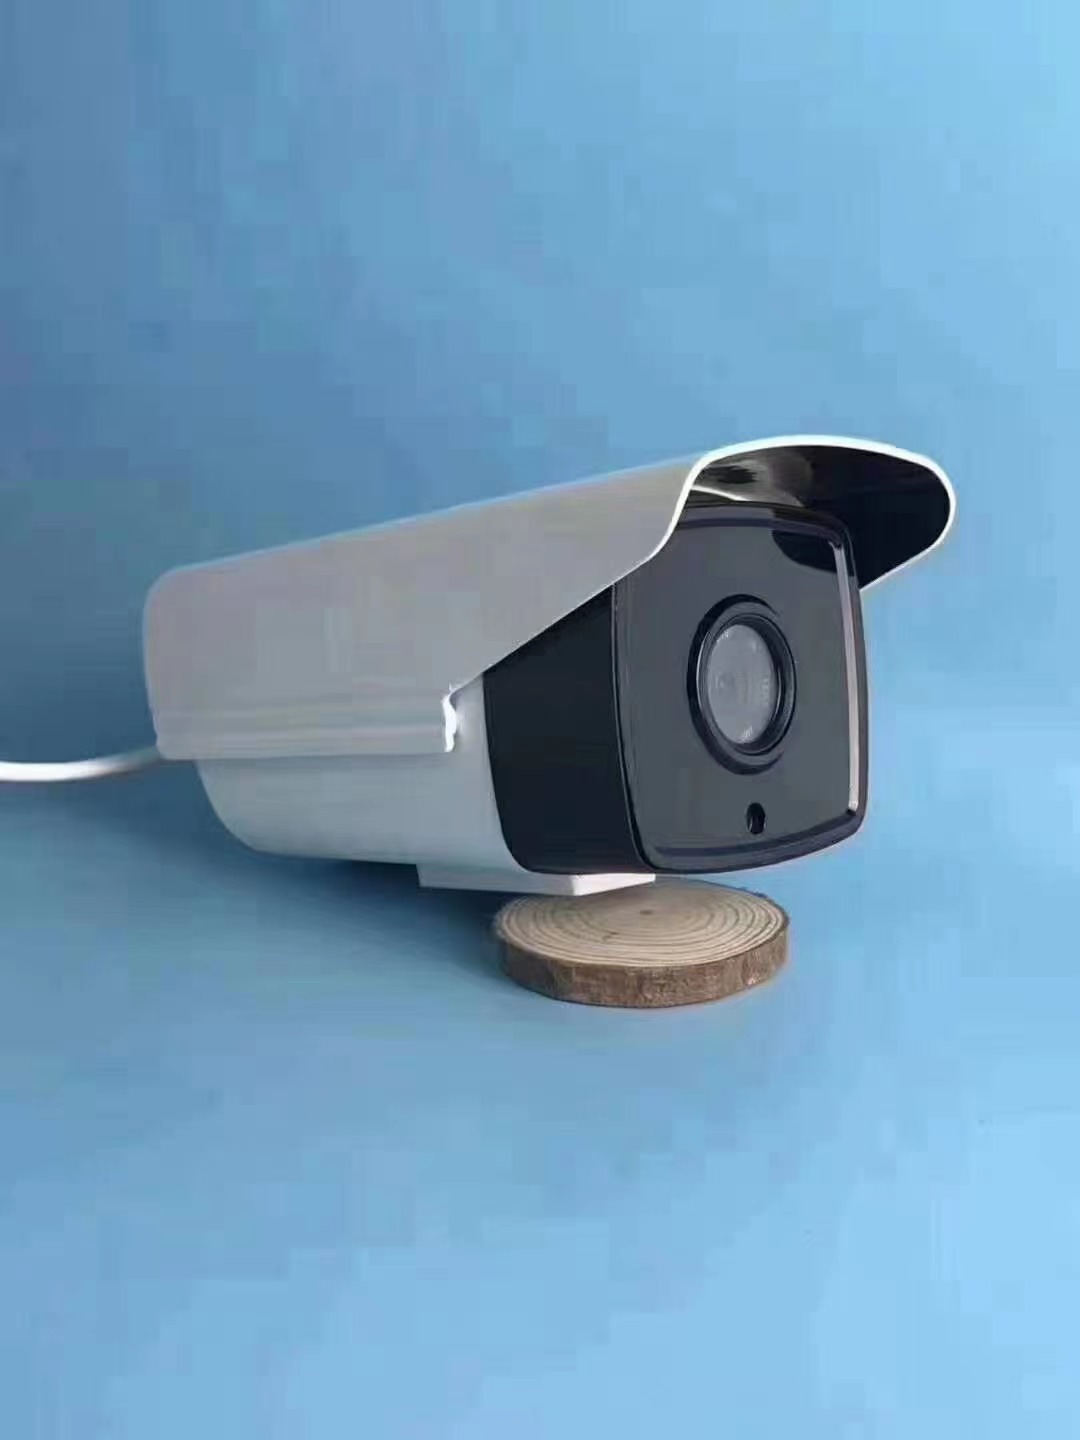 太原万柏林监控摄像头安装步骤是什么？